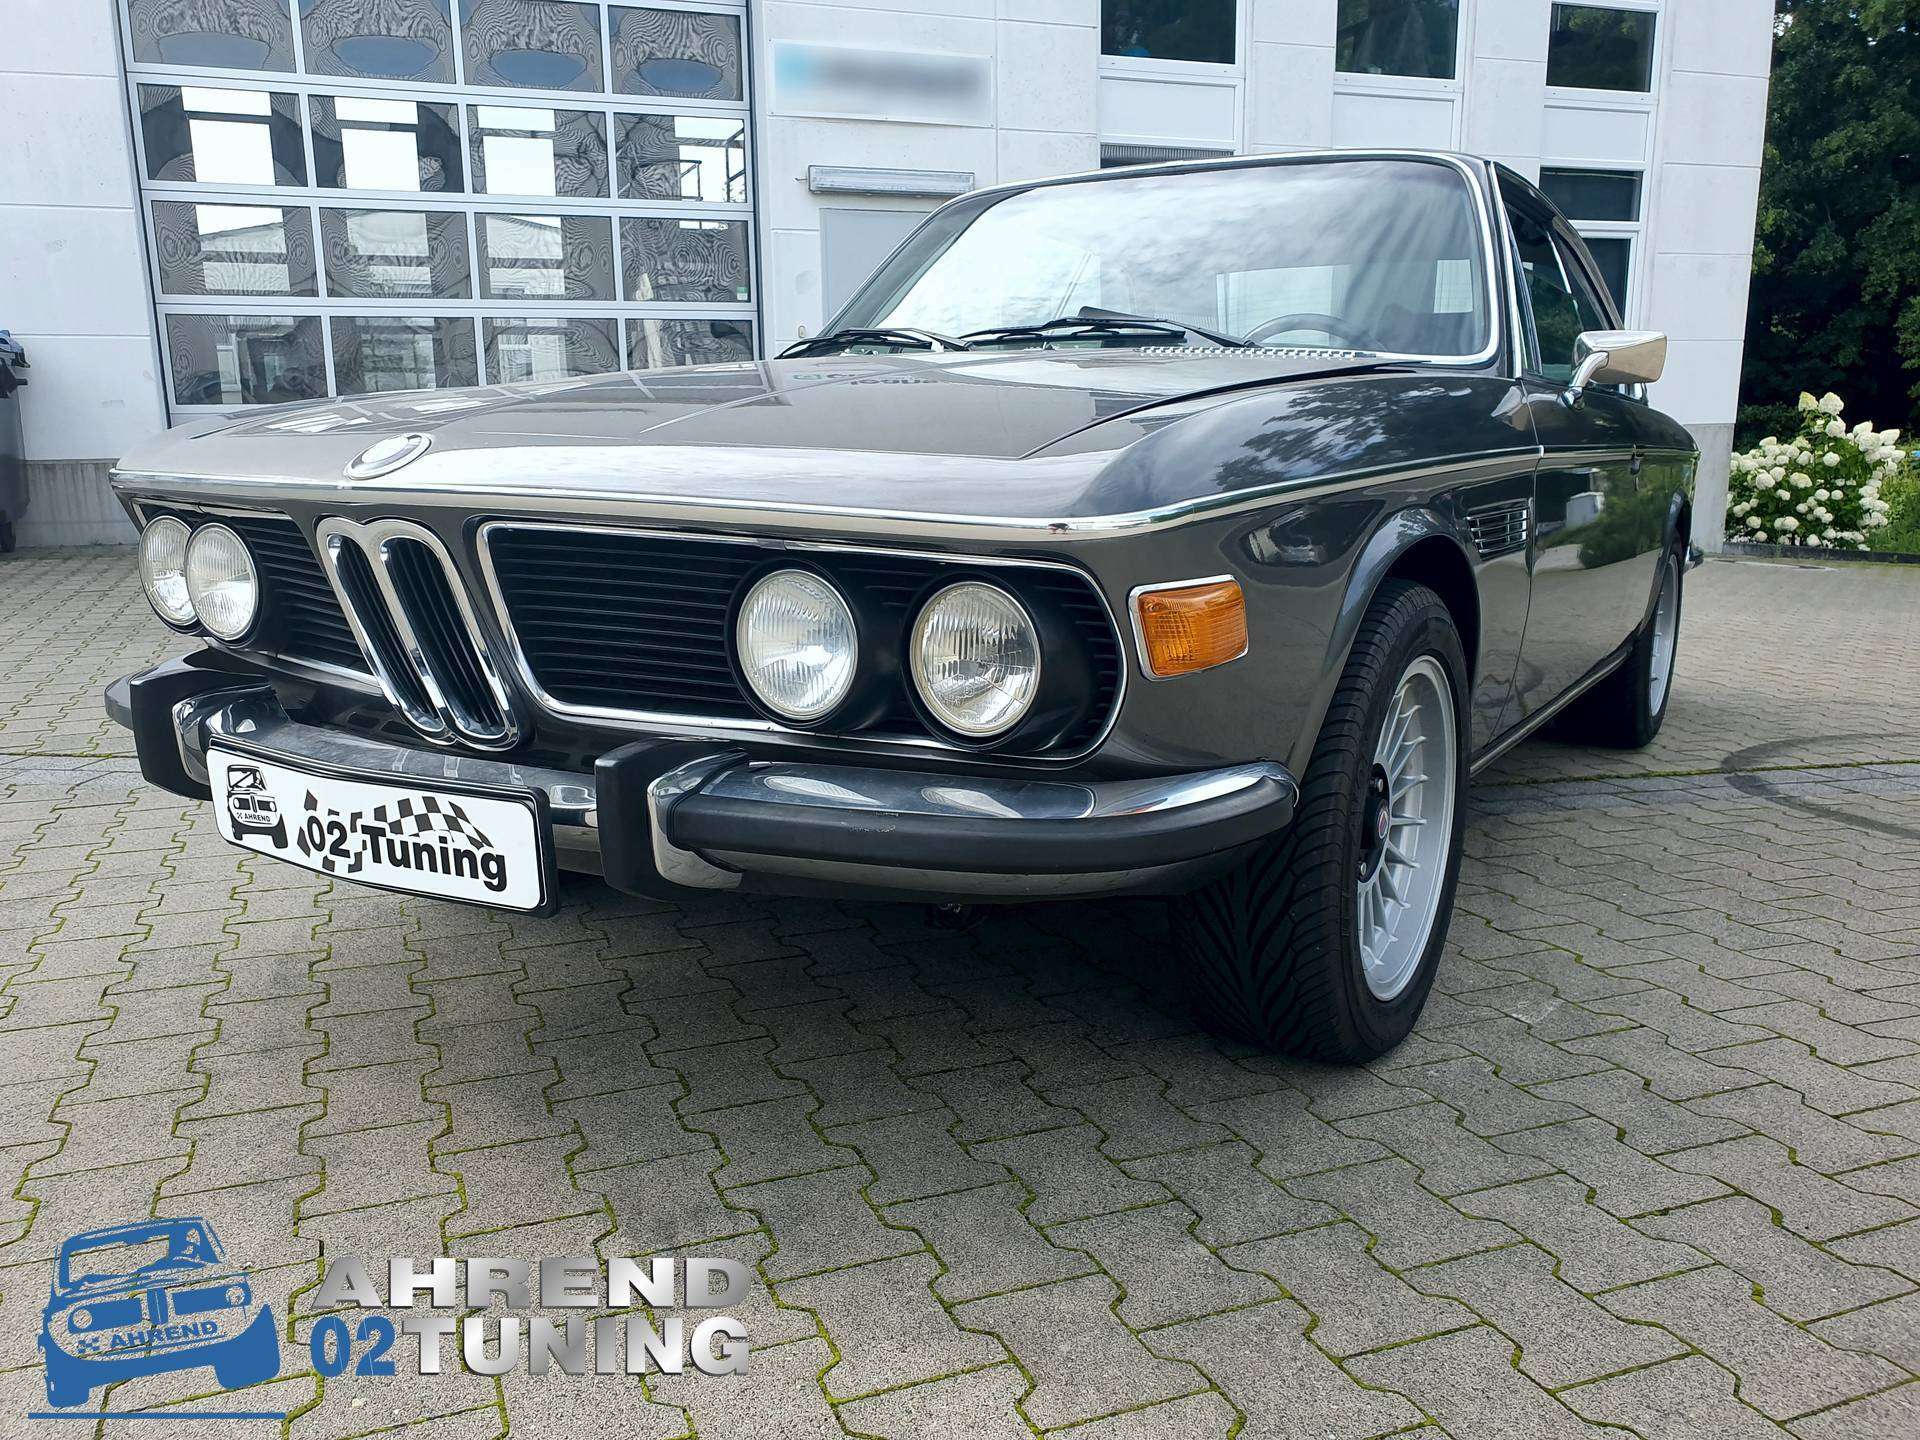 BMW 3.0 CSI E9 Coupé Oldtimer Kaufen - Verkauf. Ahrend 02 Tuning, BMW02 Tuning Spezialist in Rösrath, zwischen Bergisch Gladbach, Köln und Siegburg.